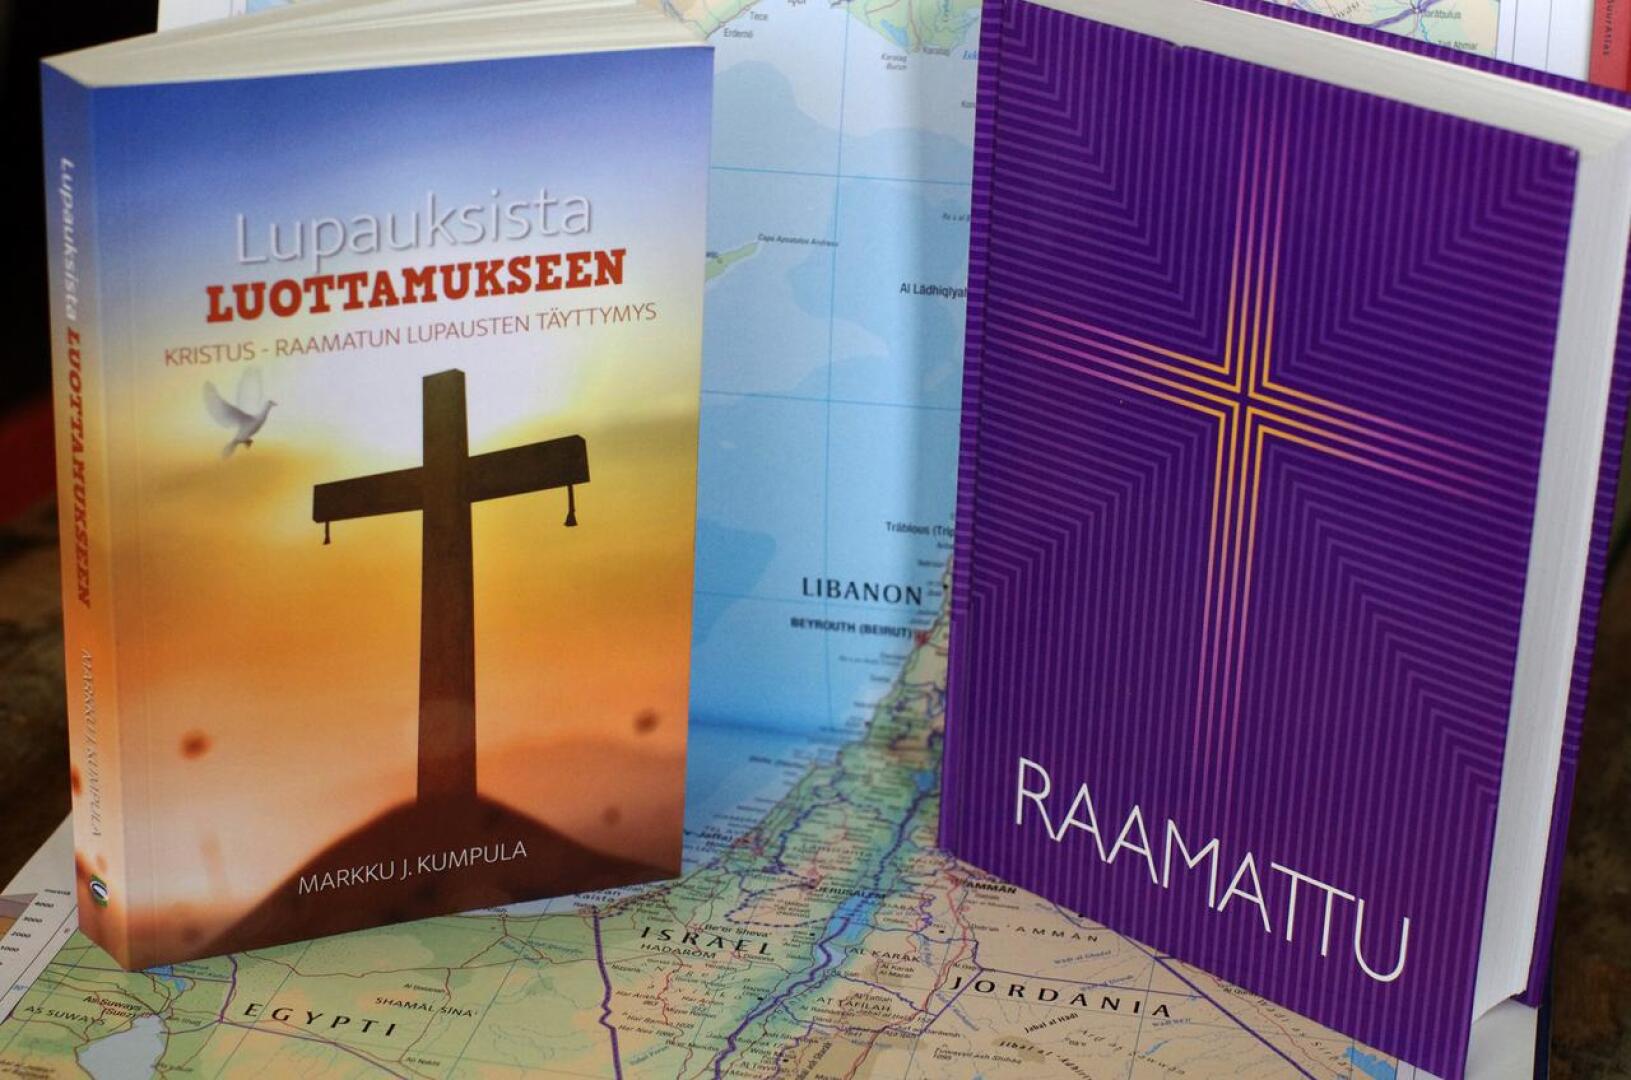 Pastori Markku J. Kumpula tarttuu kirjassaan vapaille suunnille kuumaan aiheeseen: miten uskovaisen tulisi suhtautua nykyiseen Israelin valtioon.